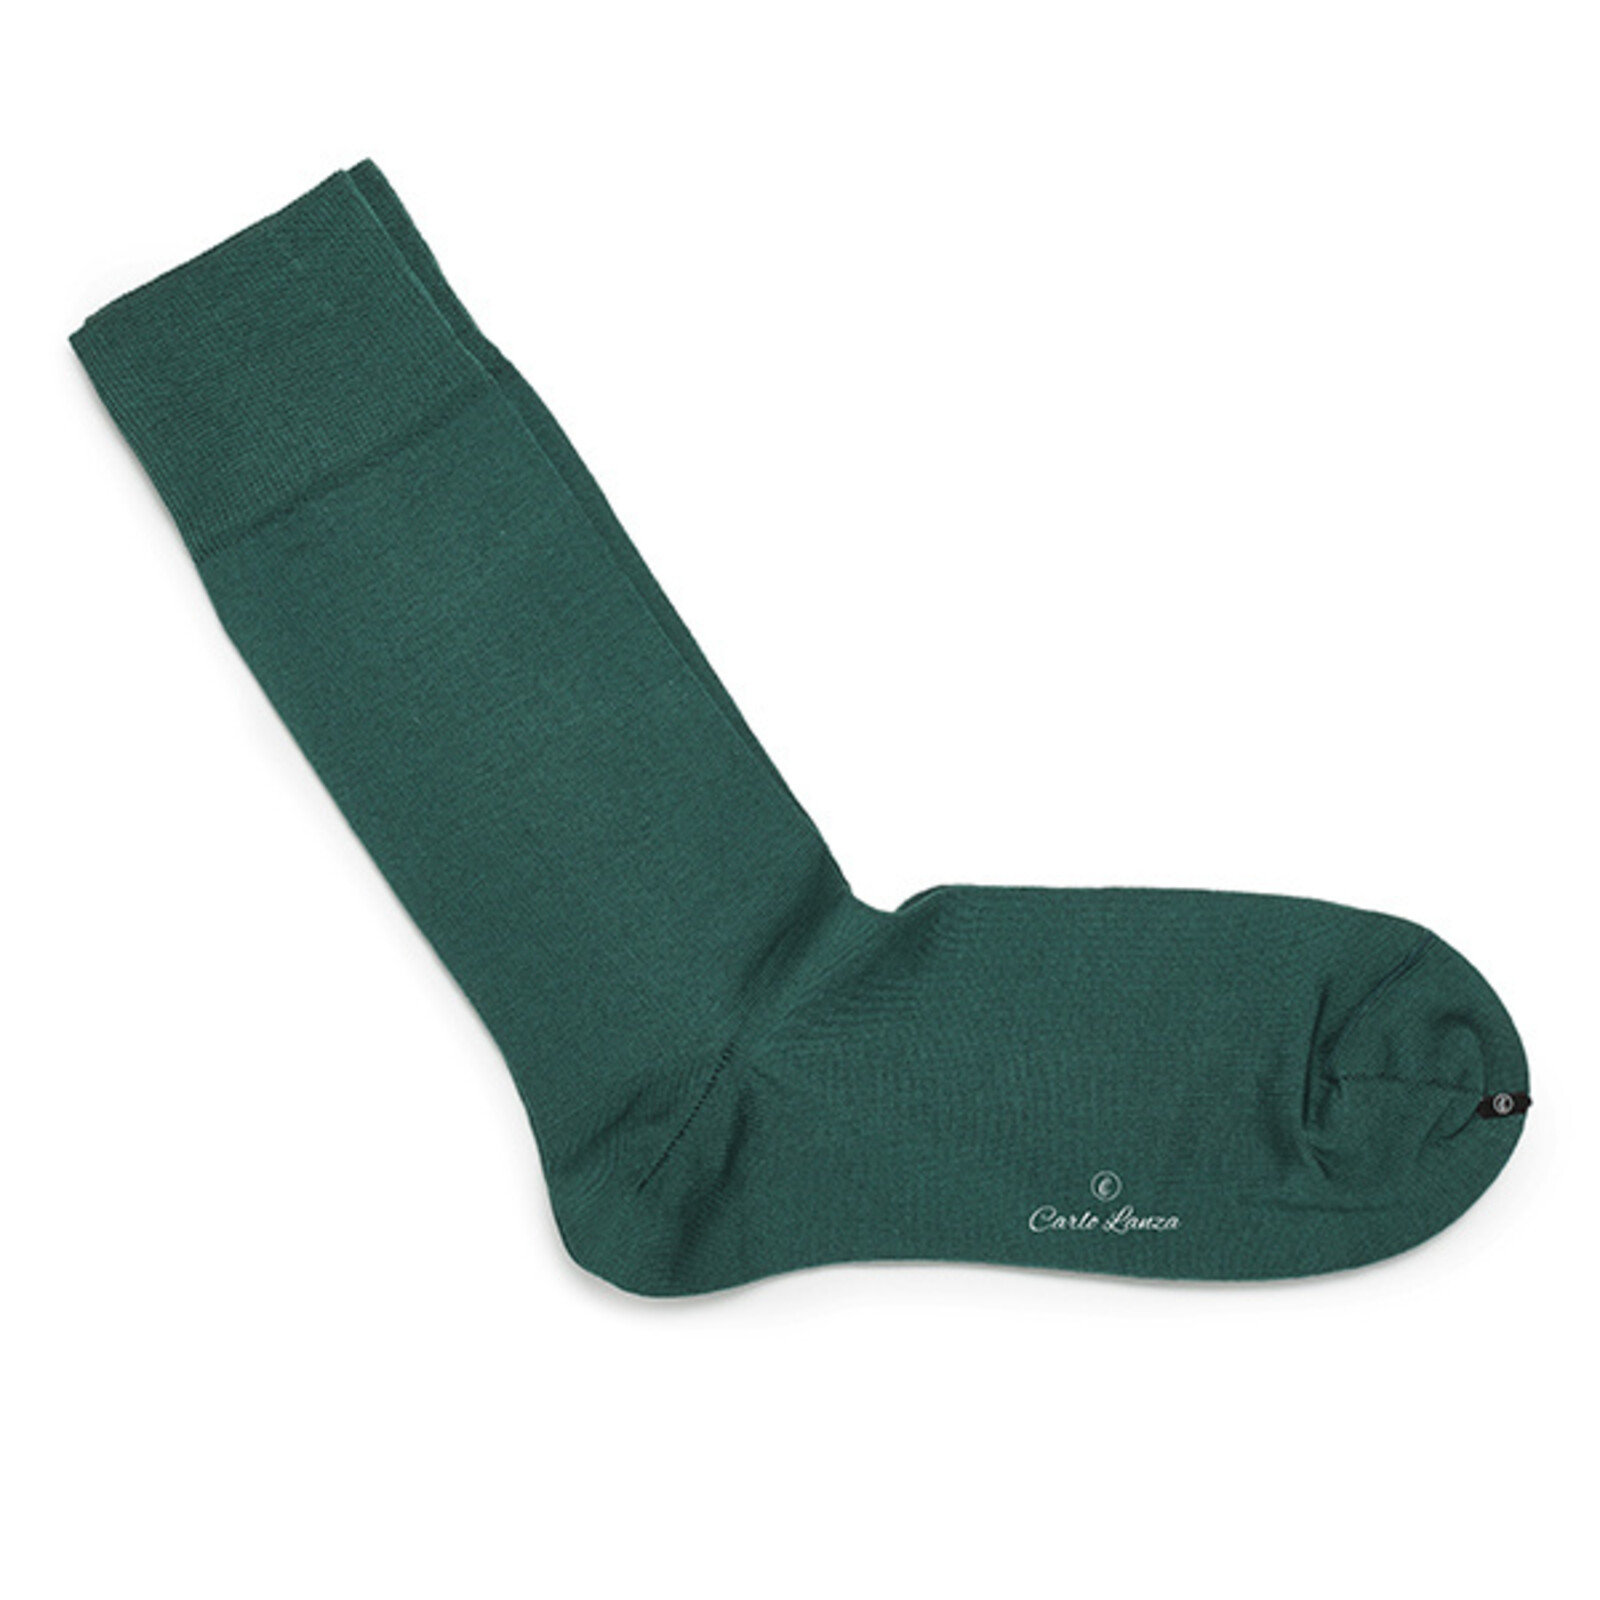 Carlo Lanza Grüne Socken Baumwolle